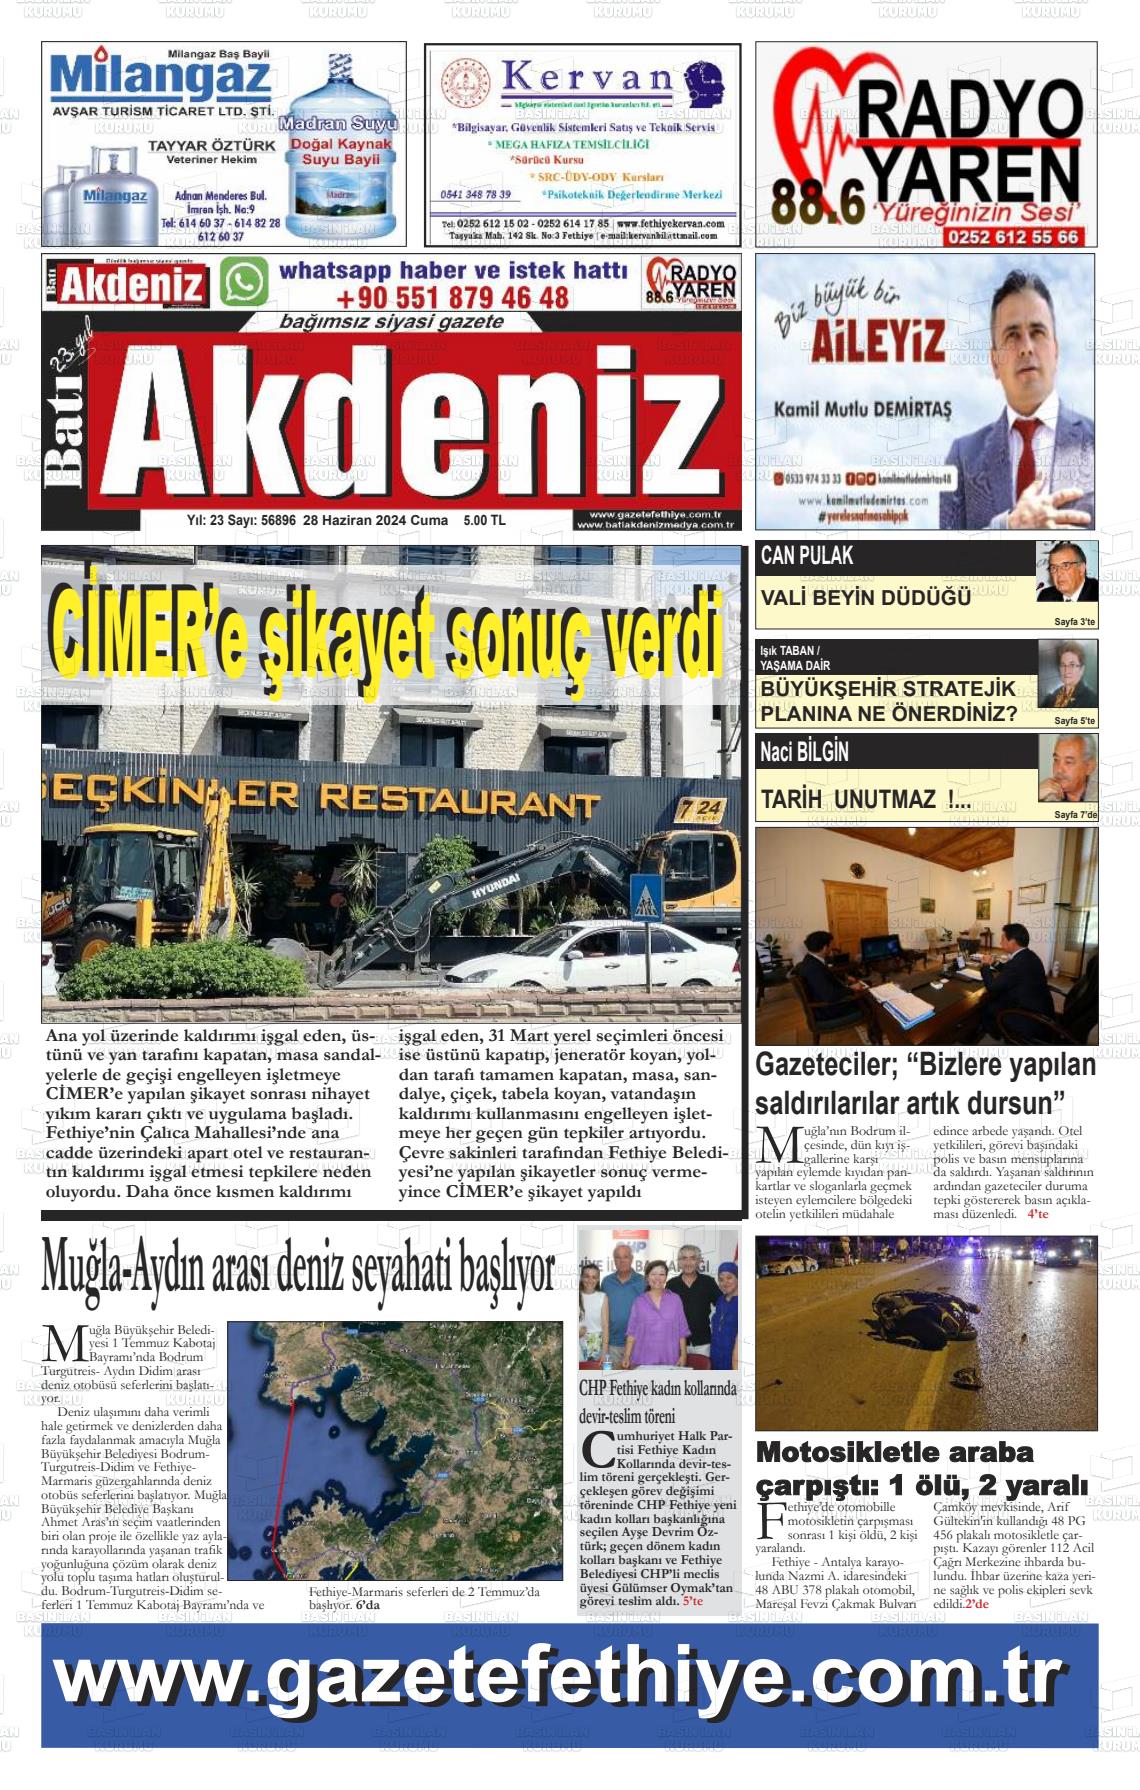 BATI AKDENİZ Gazetesi